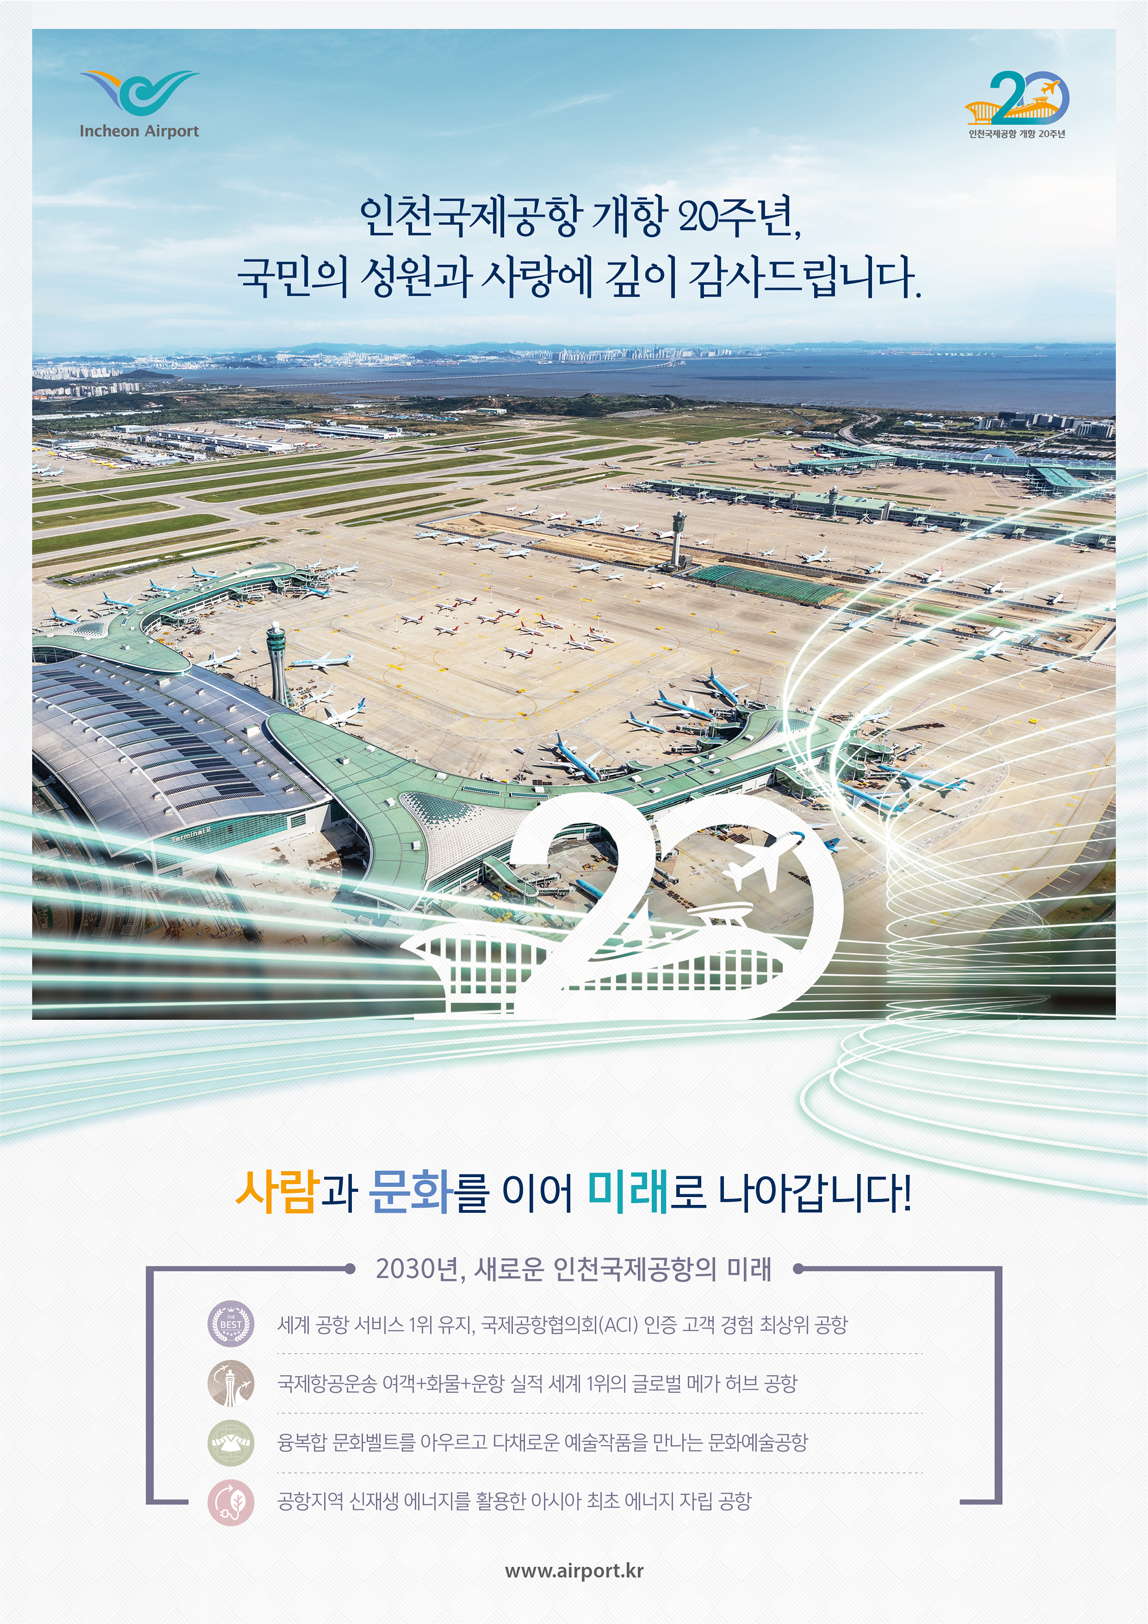 인천국제공항 광고